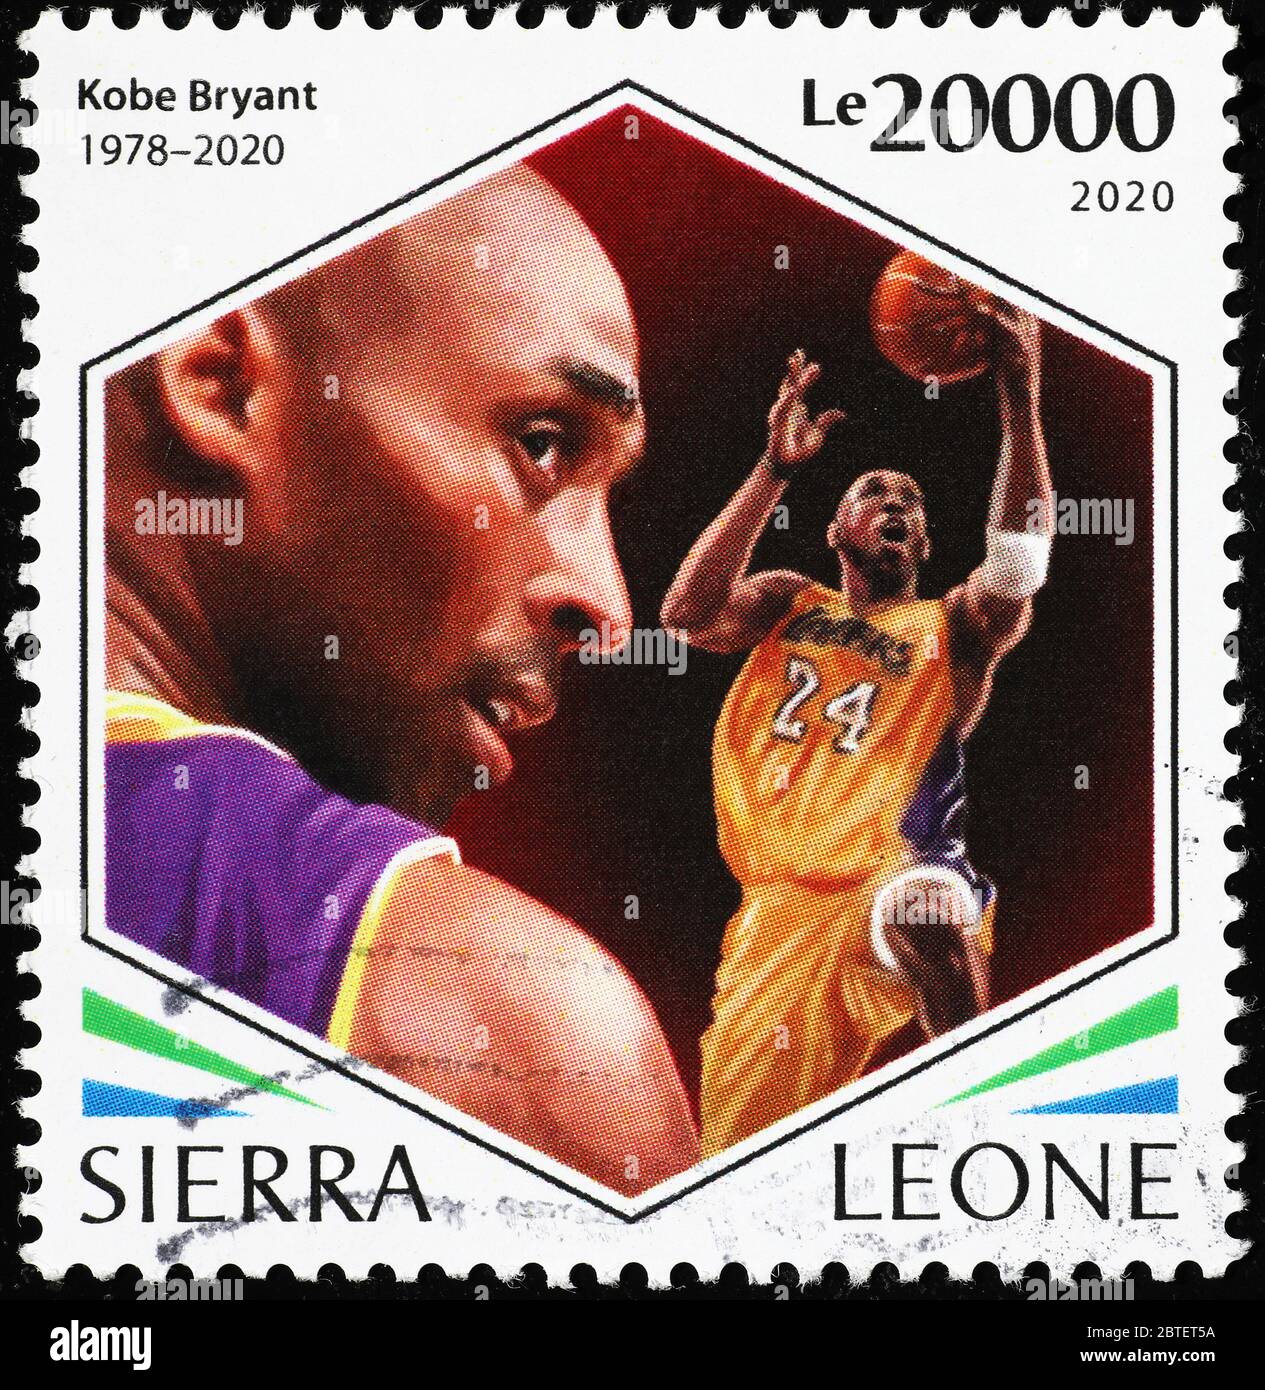 Portraits de Kobe Bryant sur un timbre-poste Banque D'Images